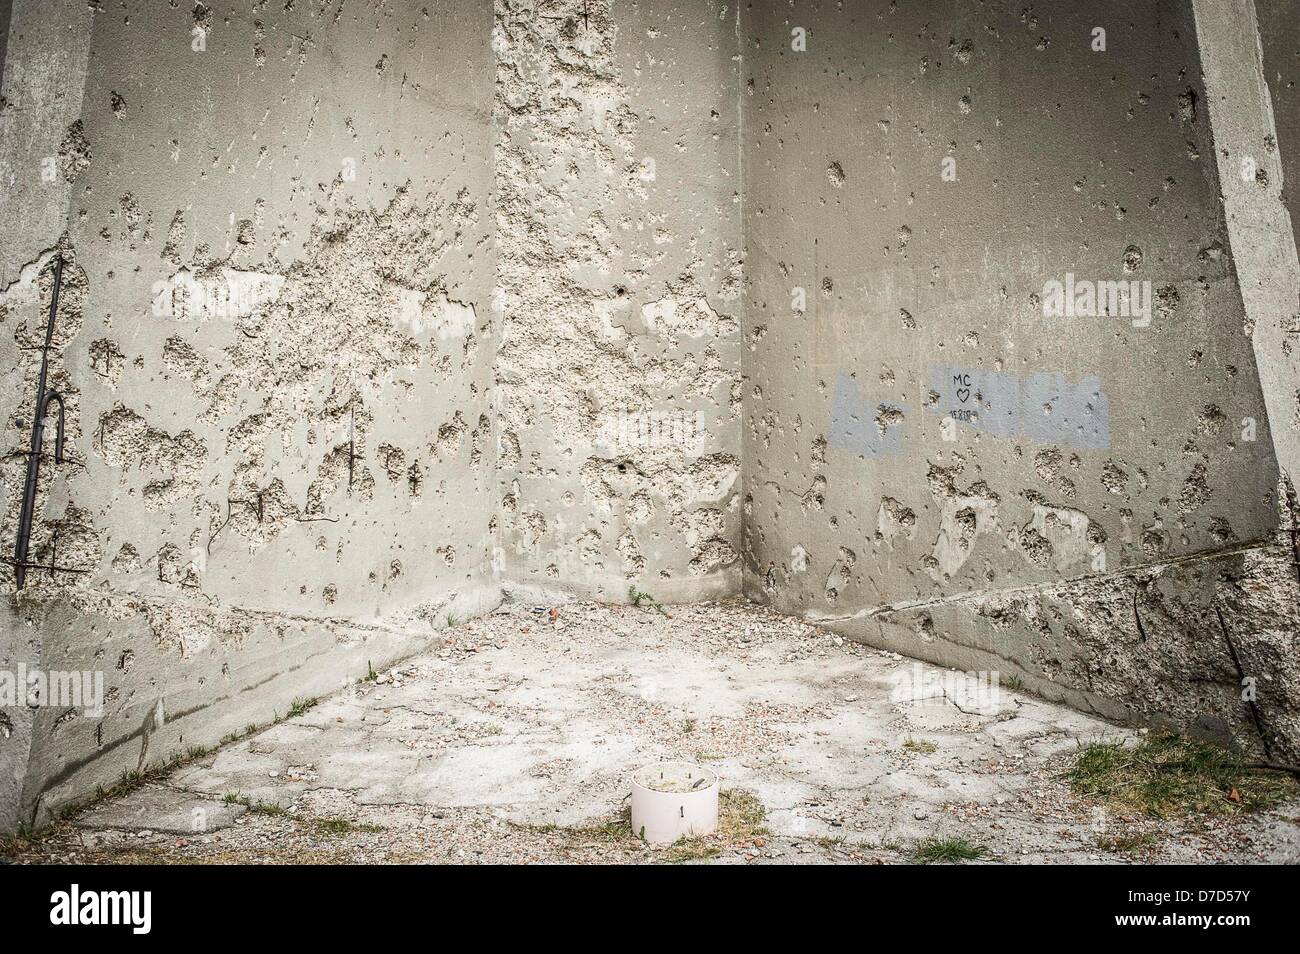 Vukovar, Croazia Il 02.05.2013 la torre simbolo della città distrutta dall'esercito jugoslavo durante la guerra nel 1991. Da Wiktor Dabkowski Foto Stock